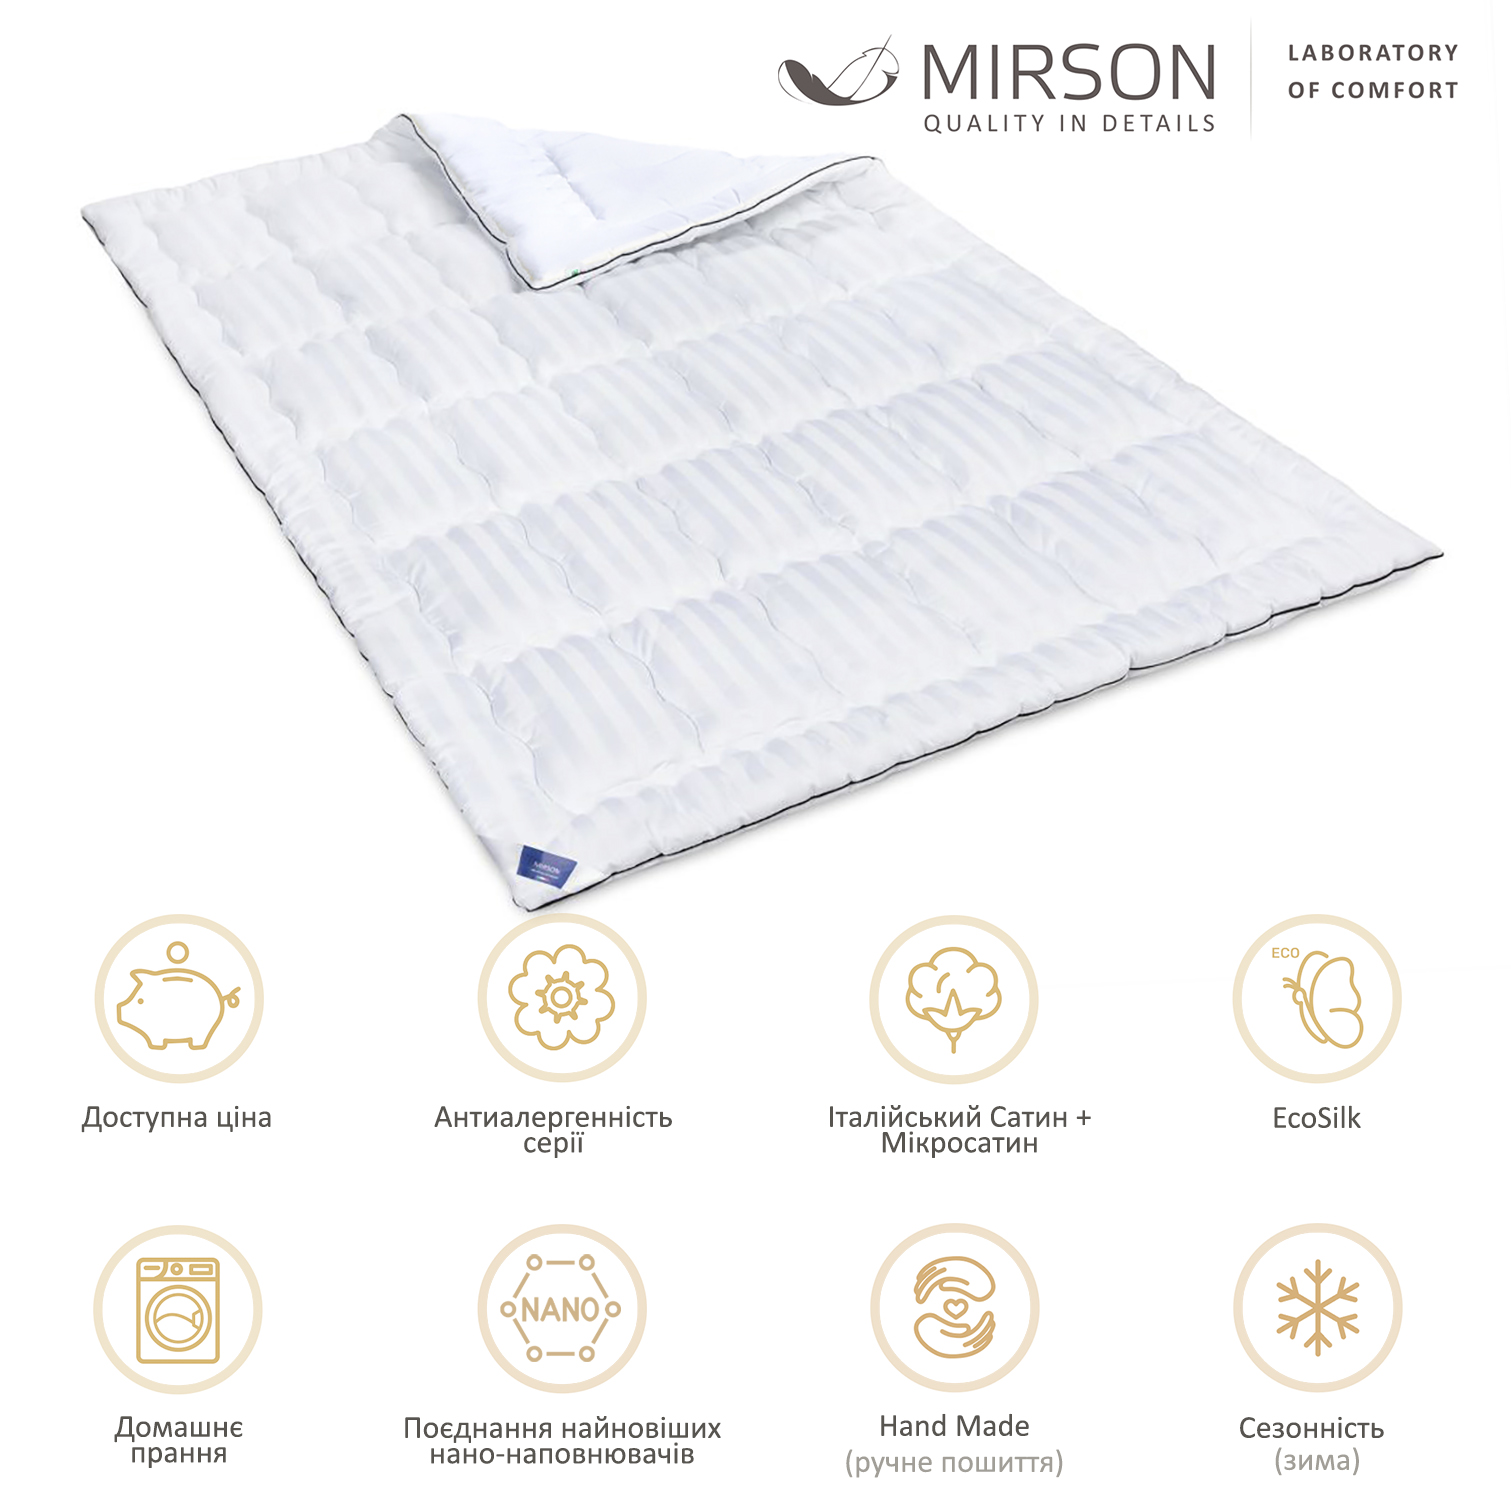 Одеяло антиаллергенное MirSon Royal Pearl Hand Made EcoSilk №0556, зимнее, 140x205 см, белое - фото 5